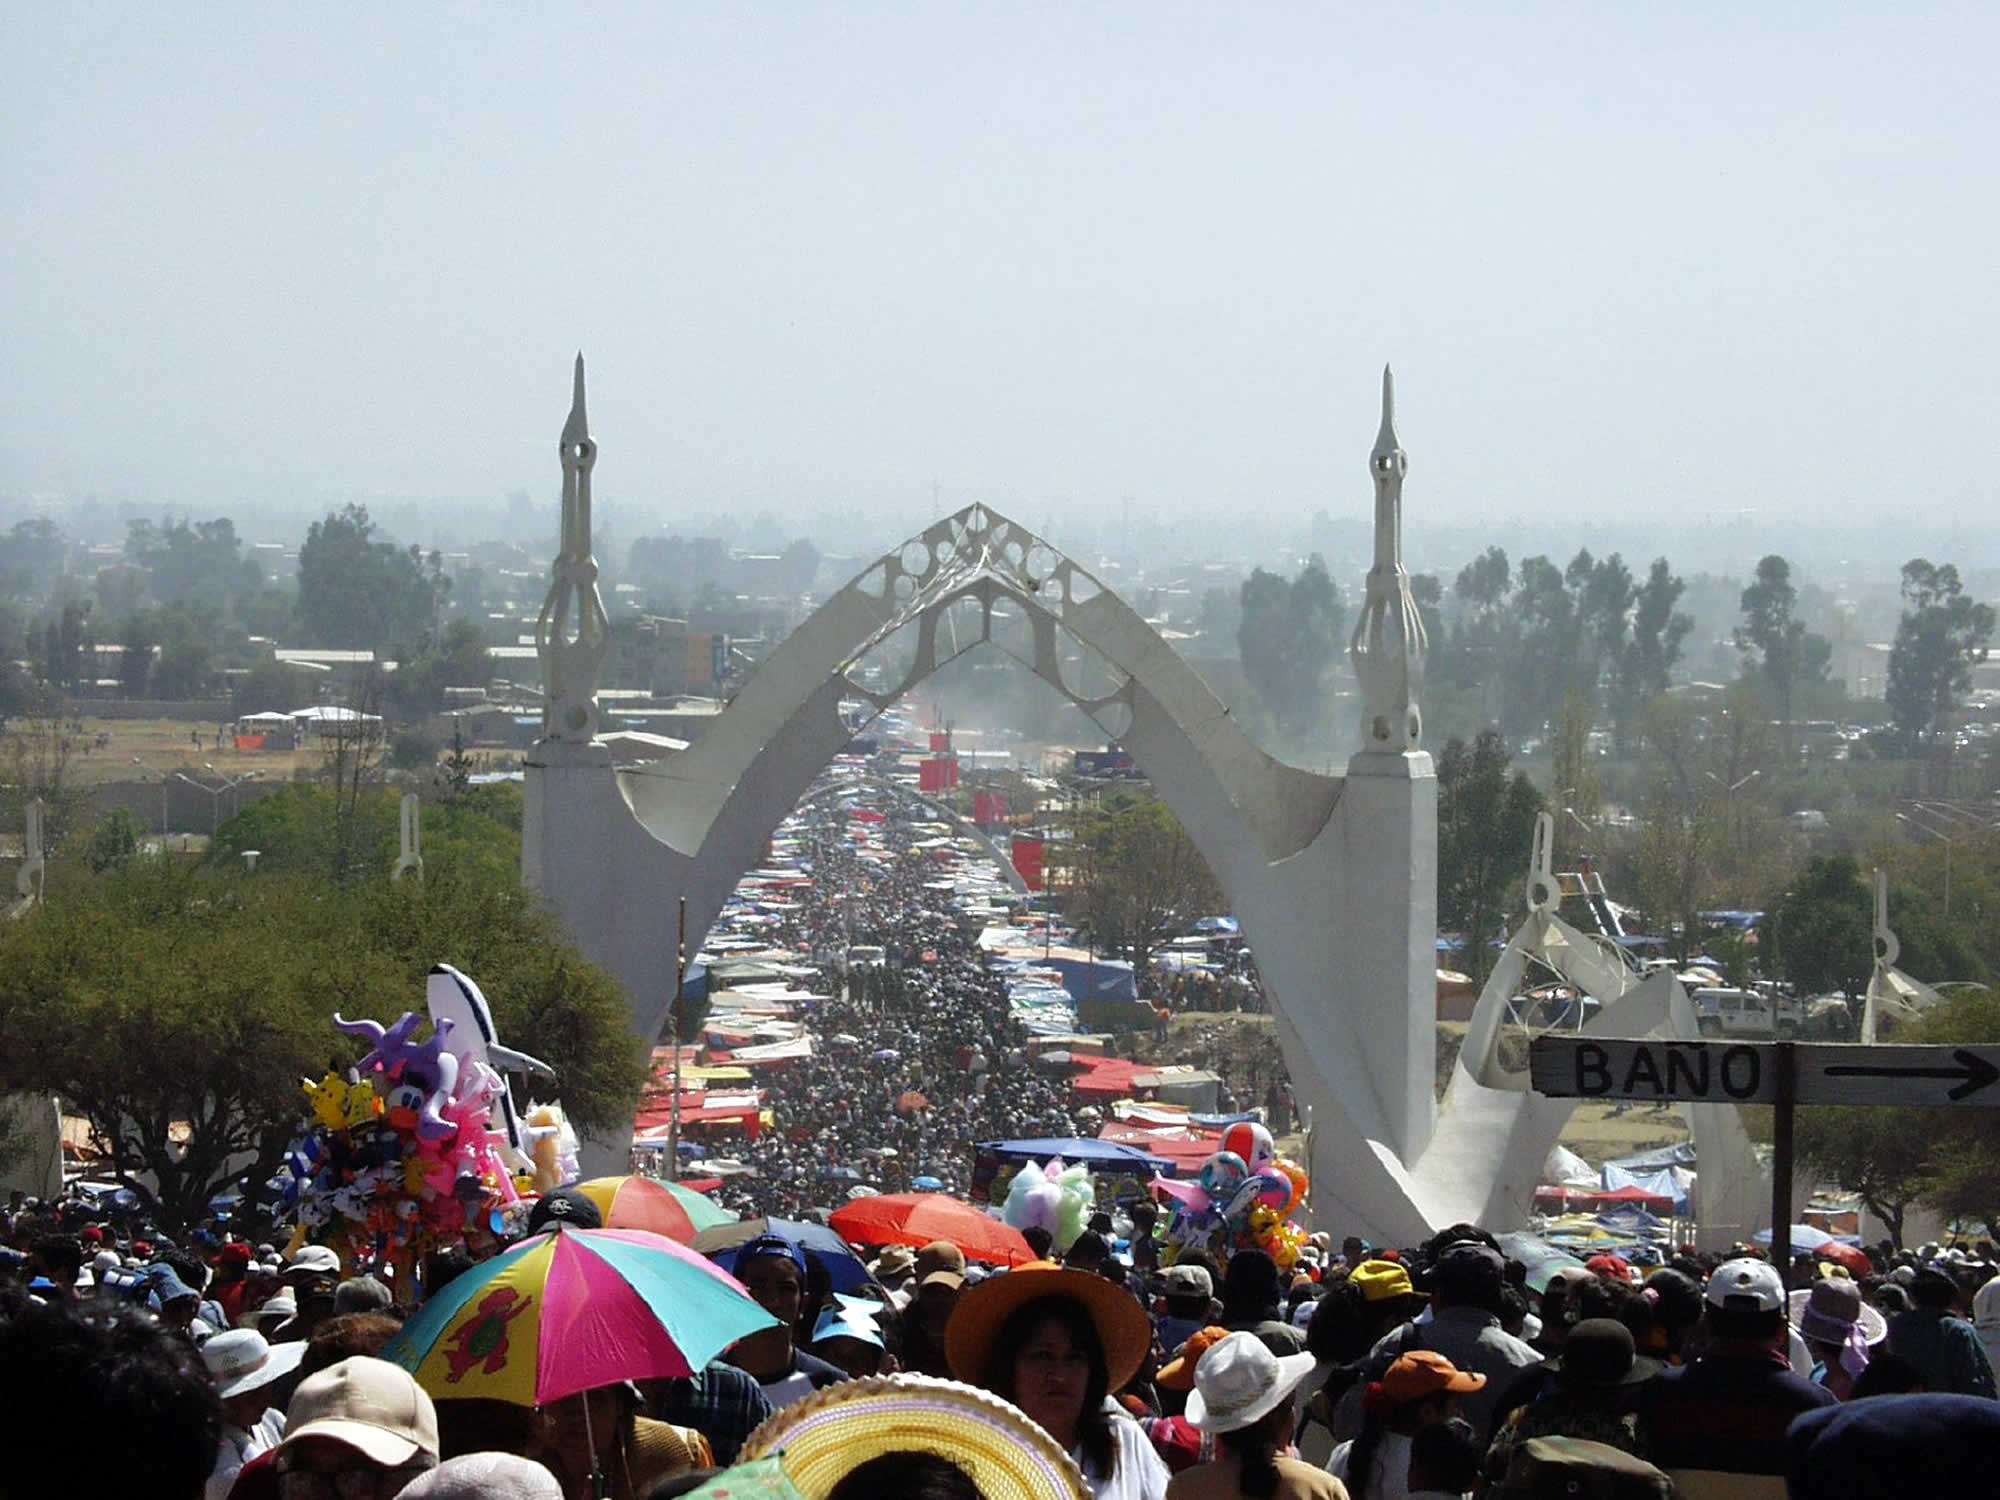 Urkupiña Folkloric Parade, Cochabamba